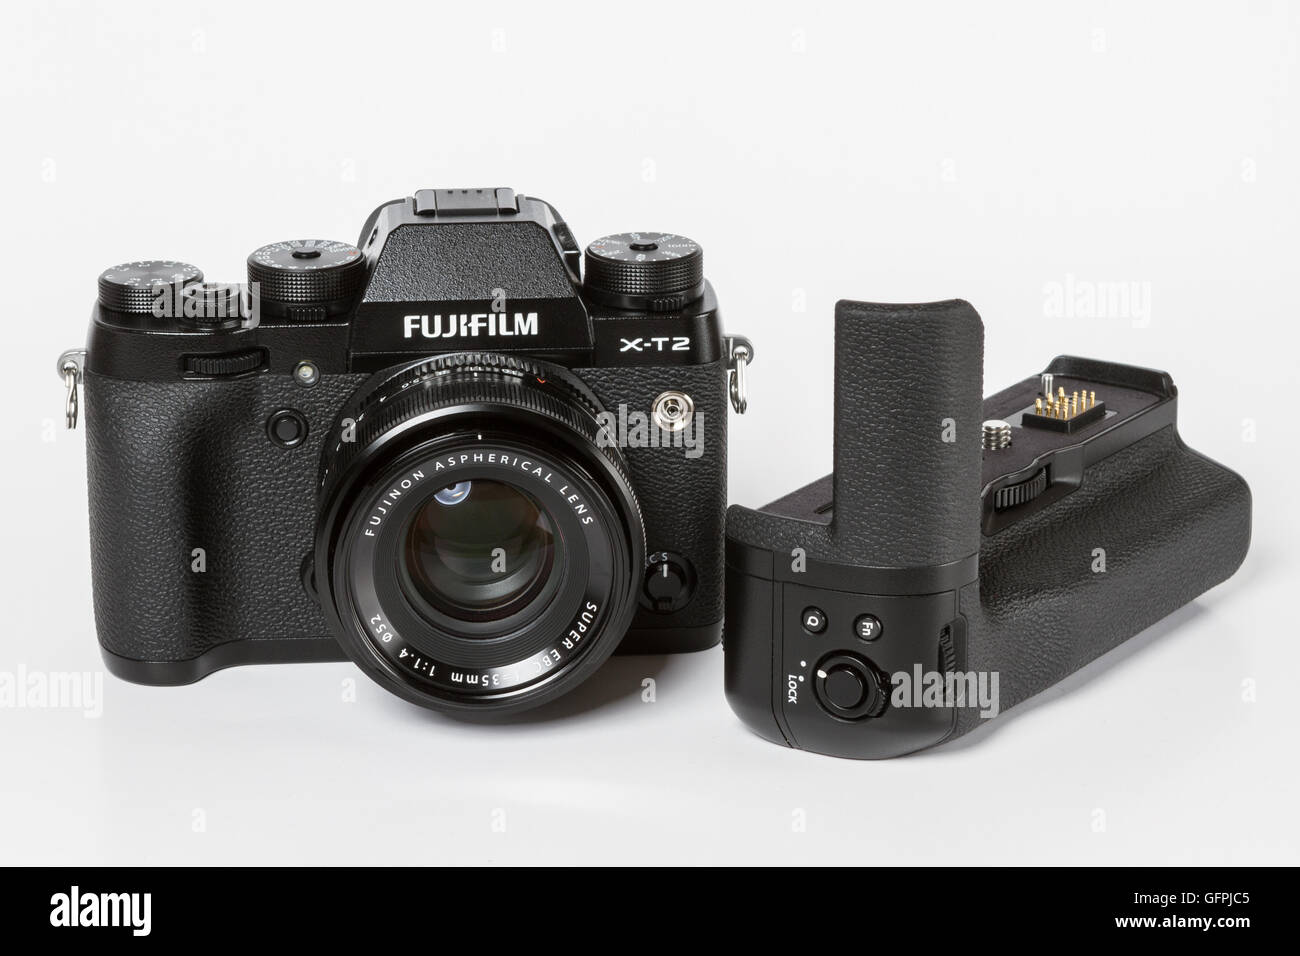 FUJIFILM X-T2, 24 mégapixels, caméra vidéo 4K mirrorless 35mm avec objectif Fujinon 1,4 et avec un grip batterie supplémentaire Banque D'Images